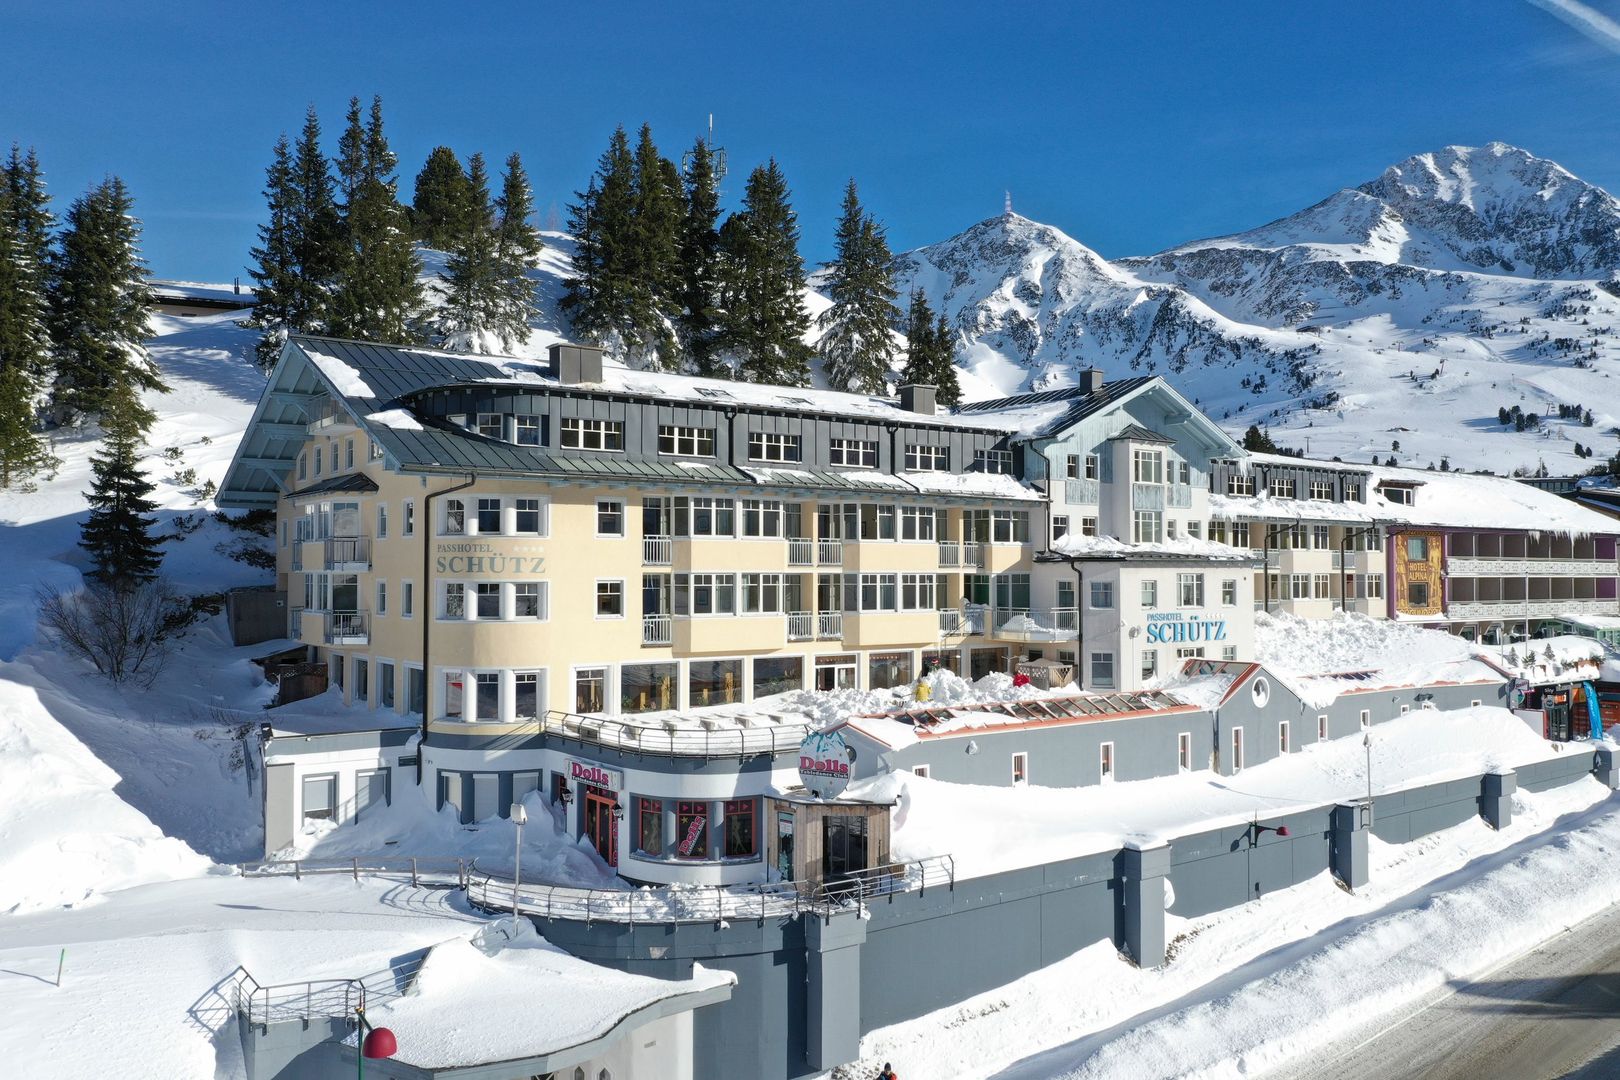 Meer info over Hotel Schütz  bij Wintertrex